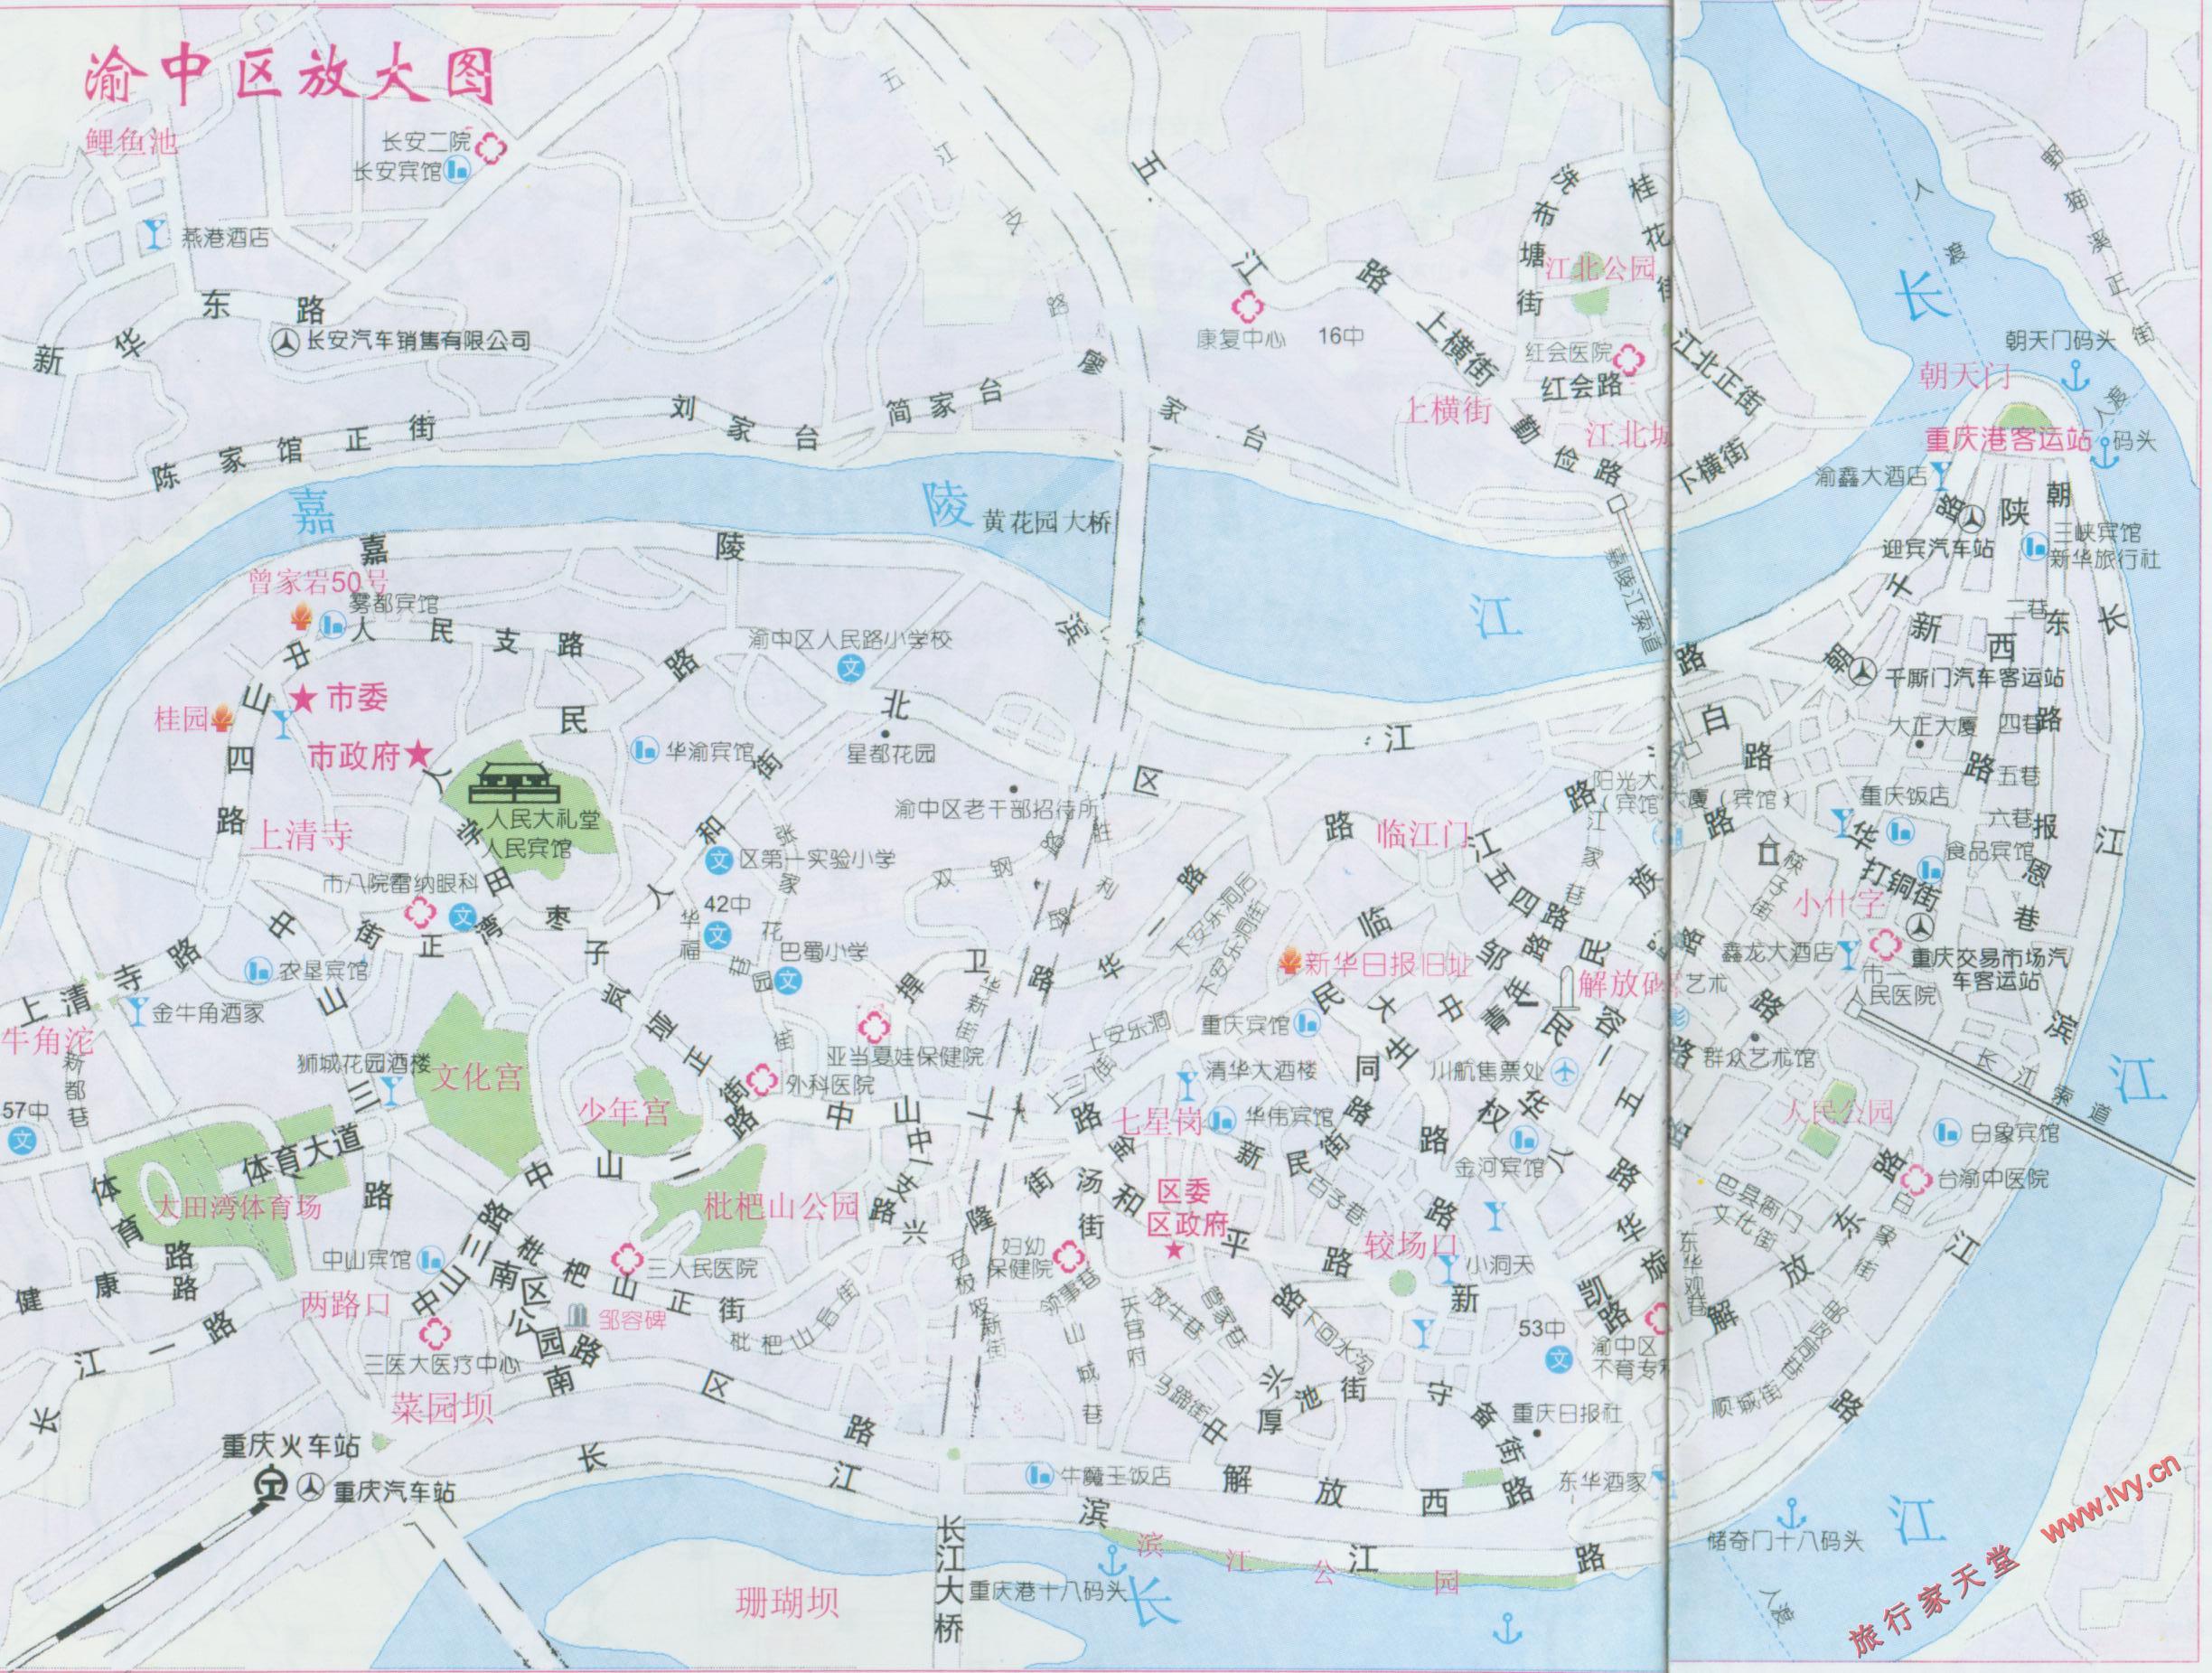 2000重庆渝中区街道地图_重庆地图库